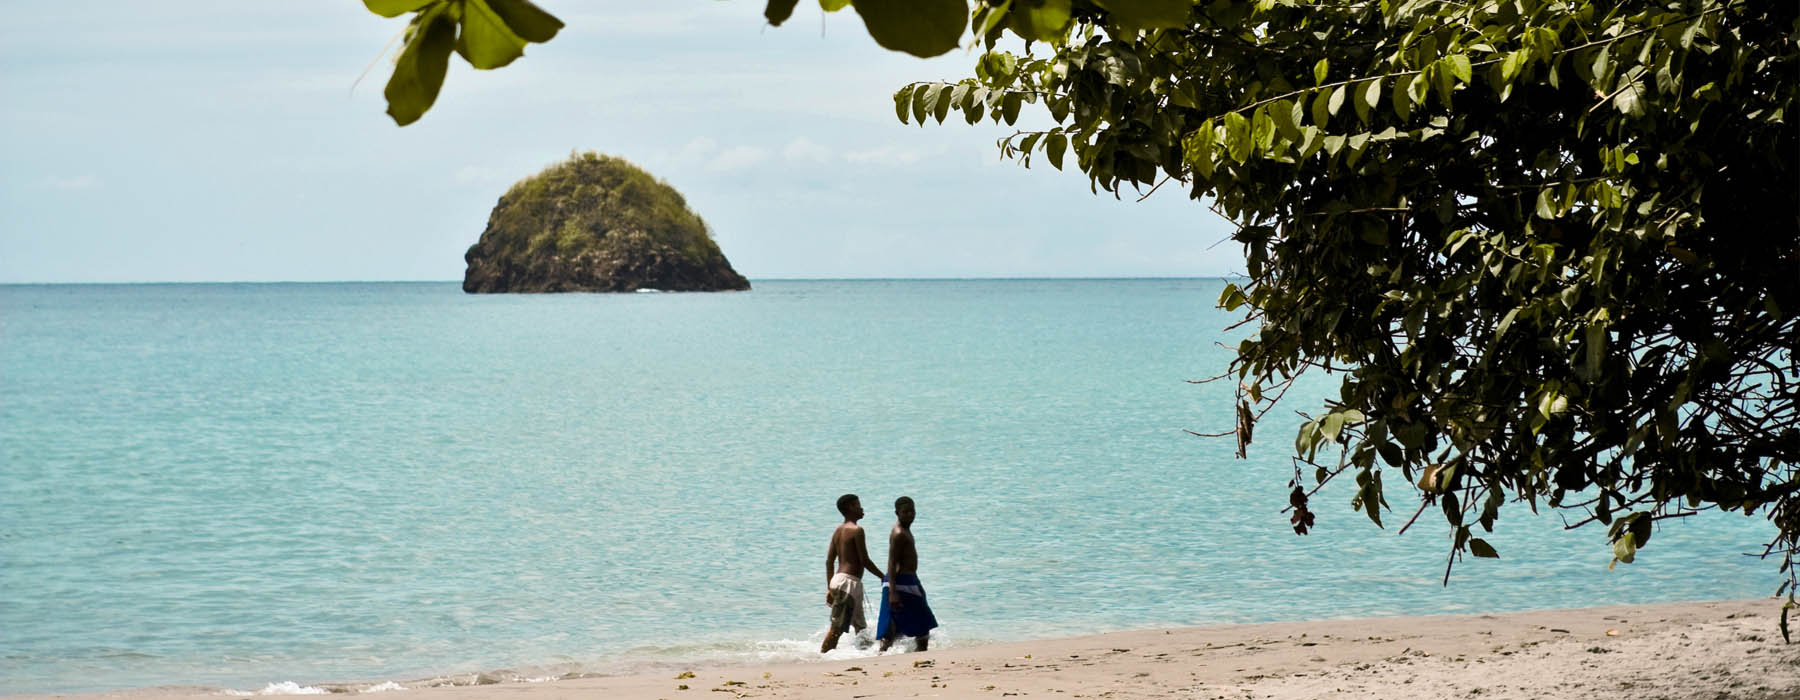 Voyages de luxe Martinique